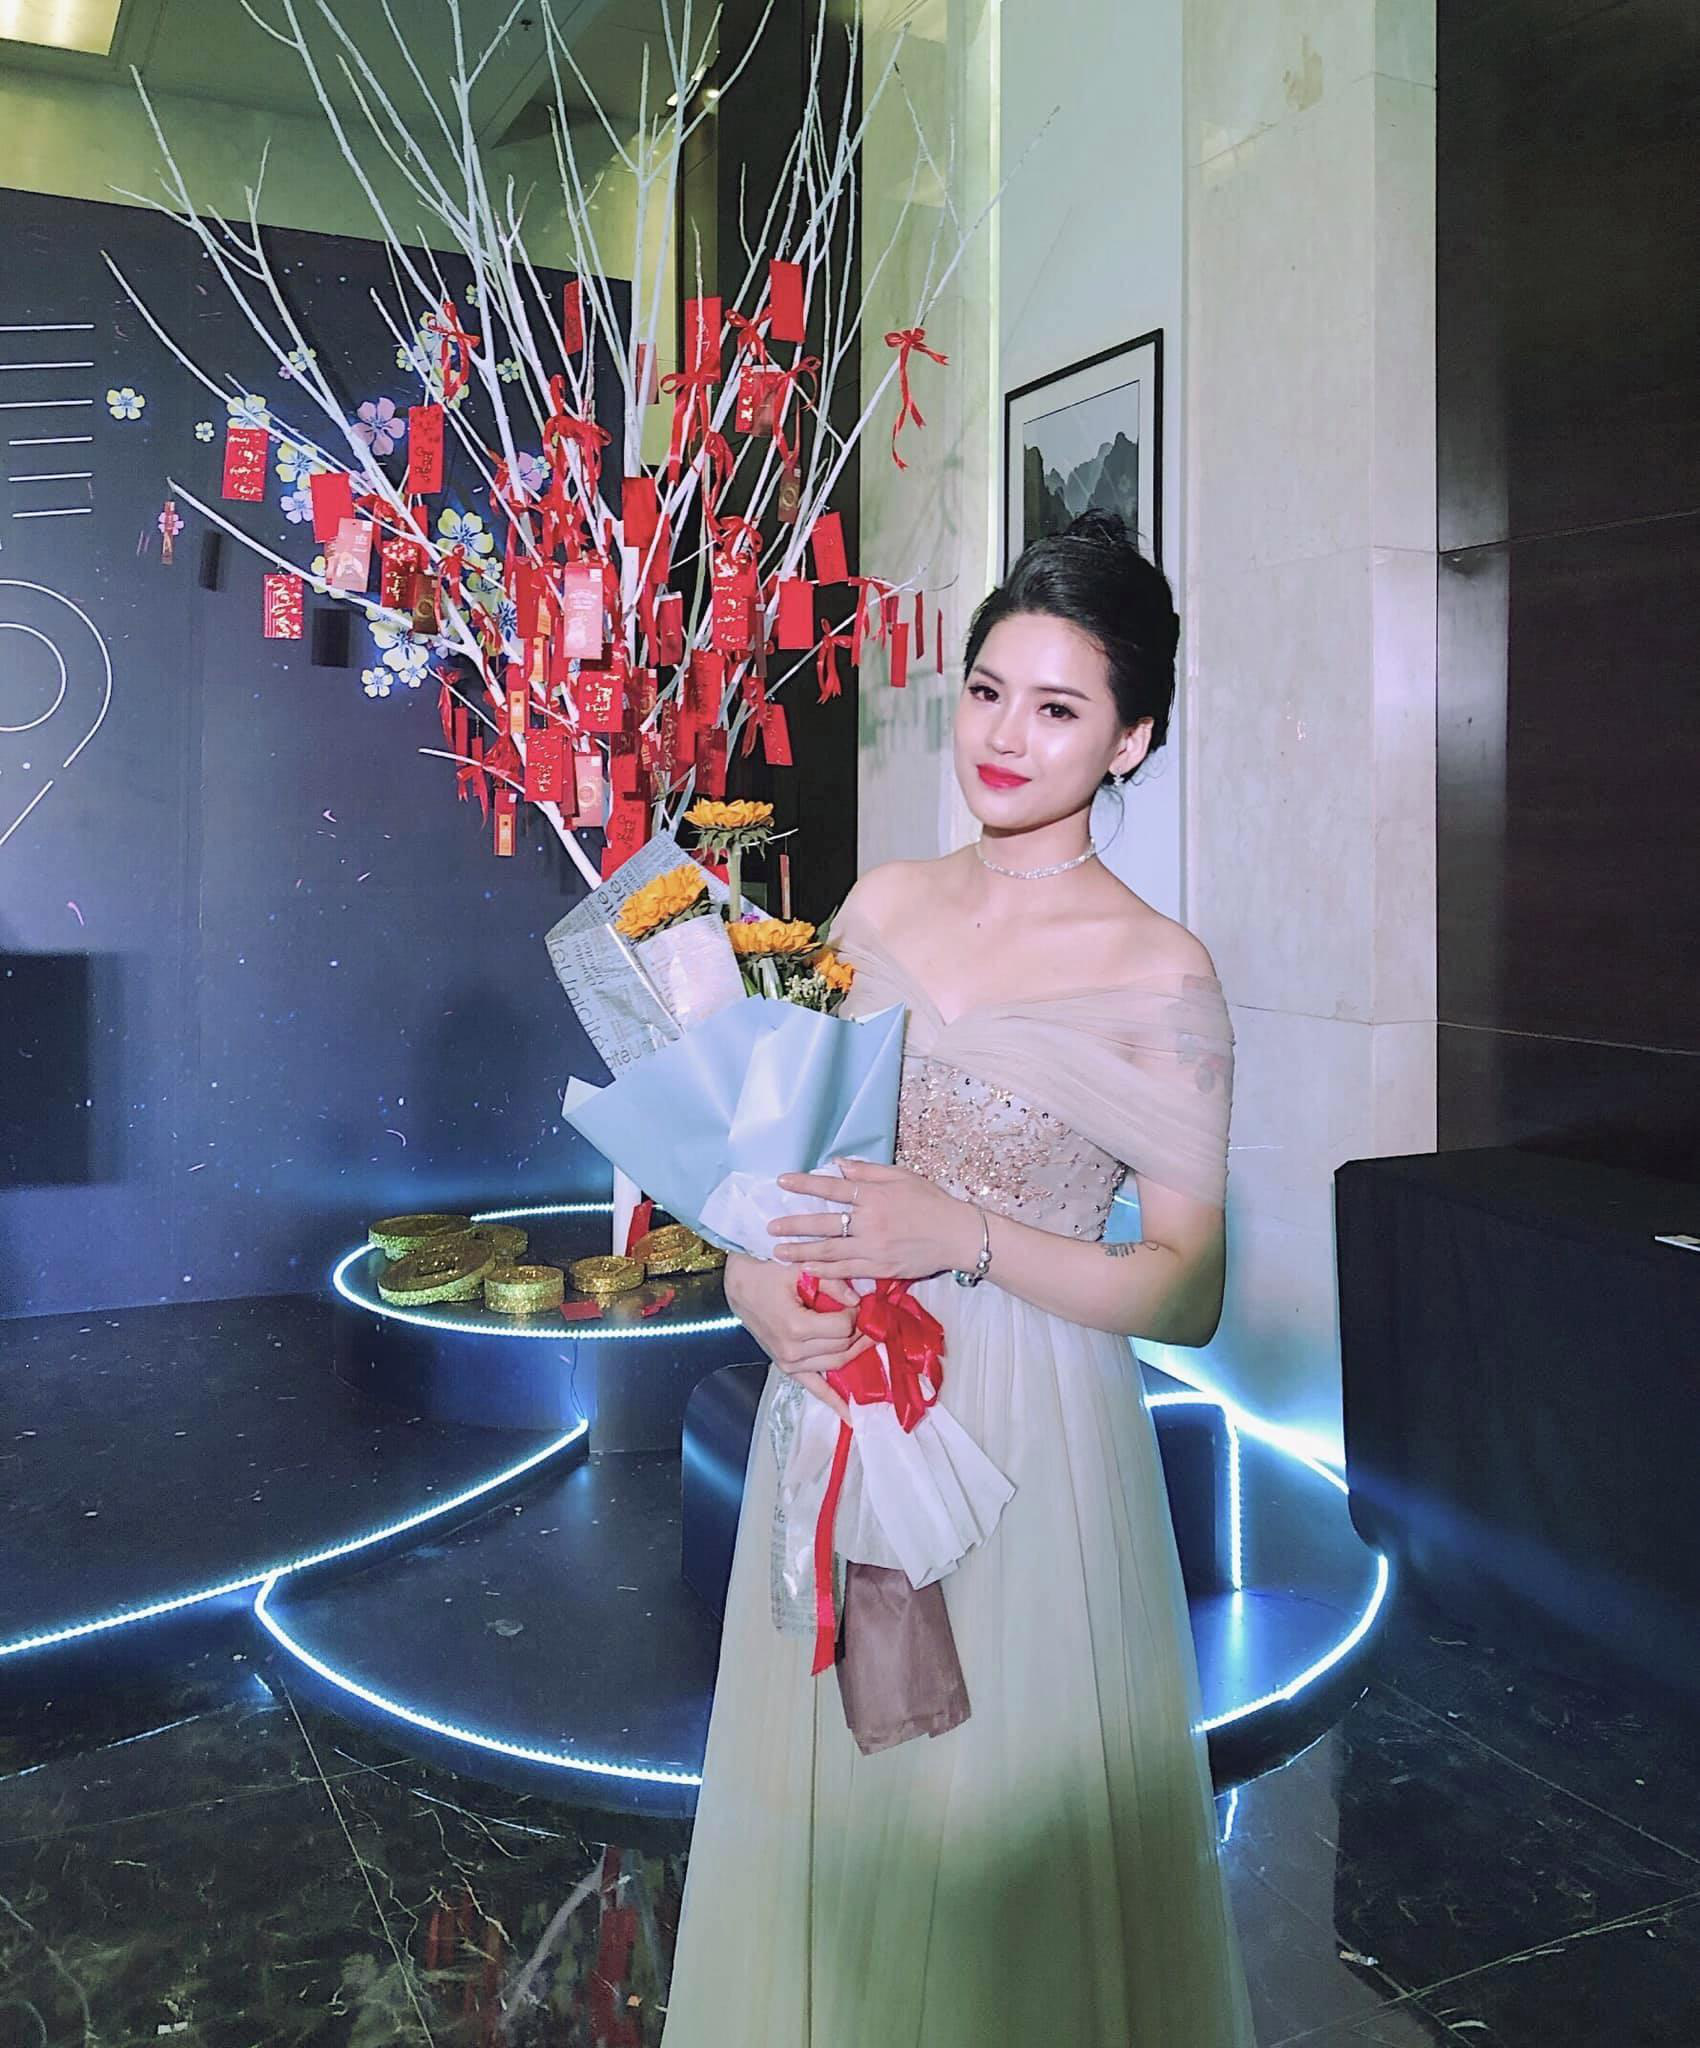 Beauty Blogger Võ Hà Linh: đường chỉ đẹp khi có dấu chân mình đi - Ảnh 3.